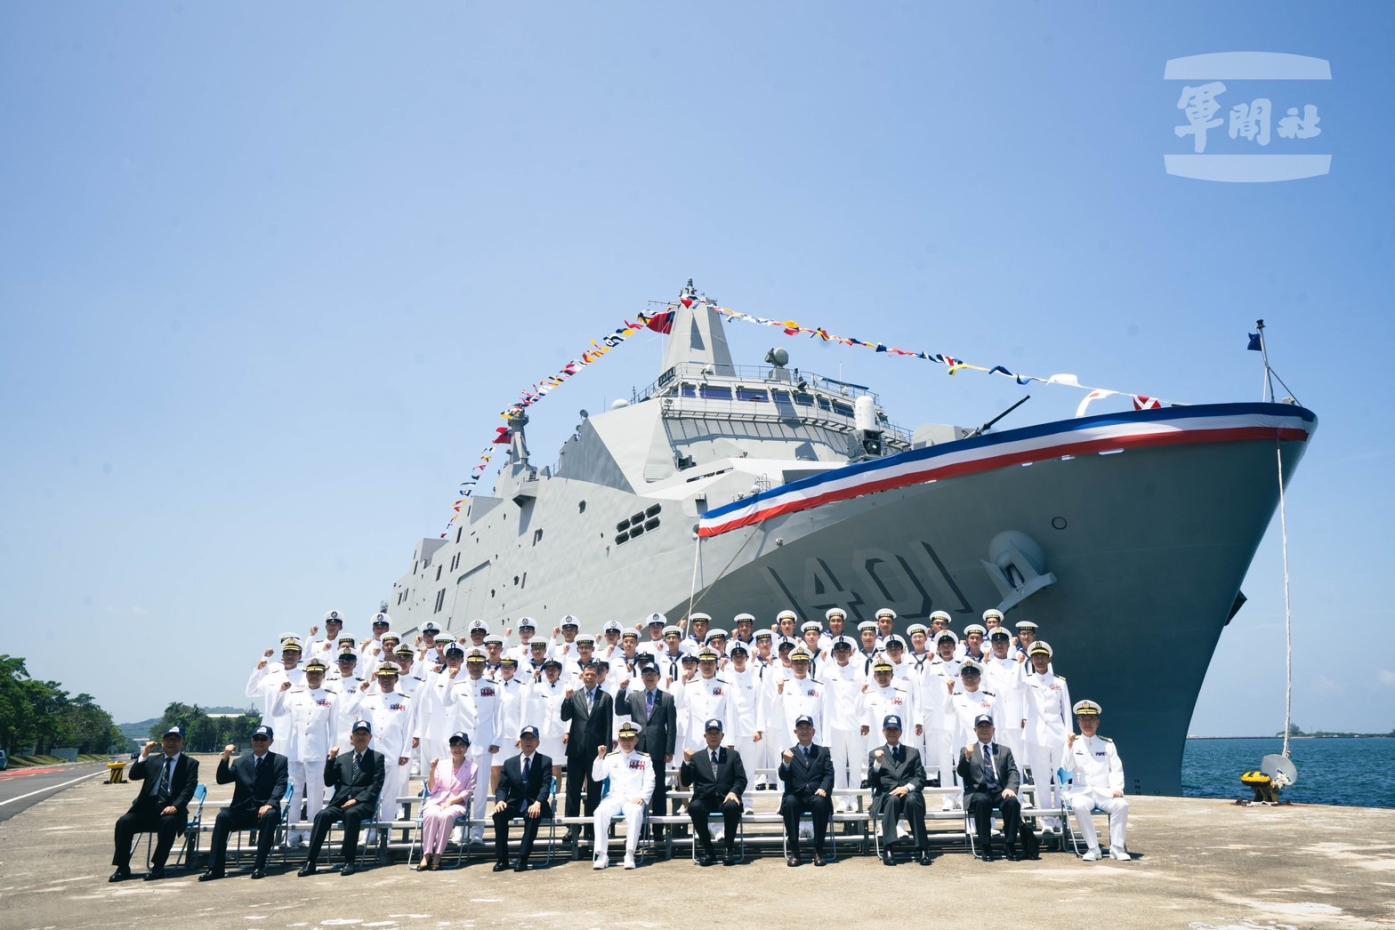 海軍首艘萬噸級兩棲船塢運輸艦玉山軍艦今成軍。海軍司令部提供